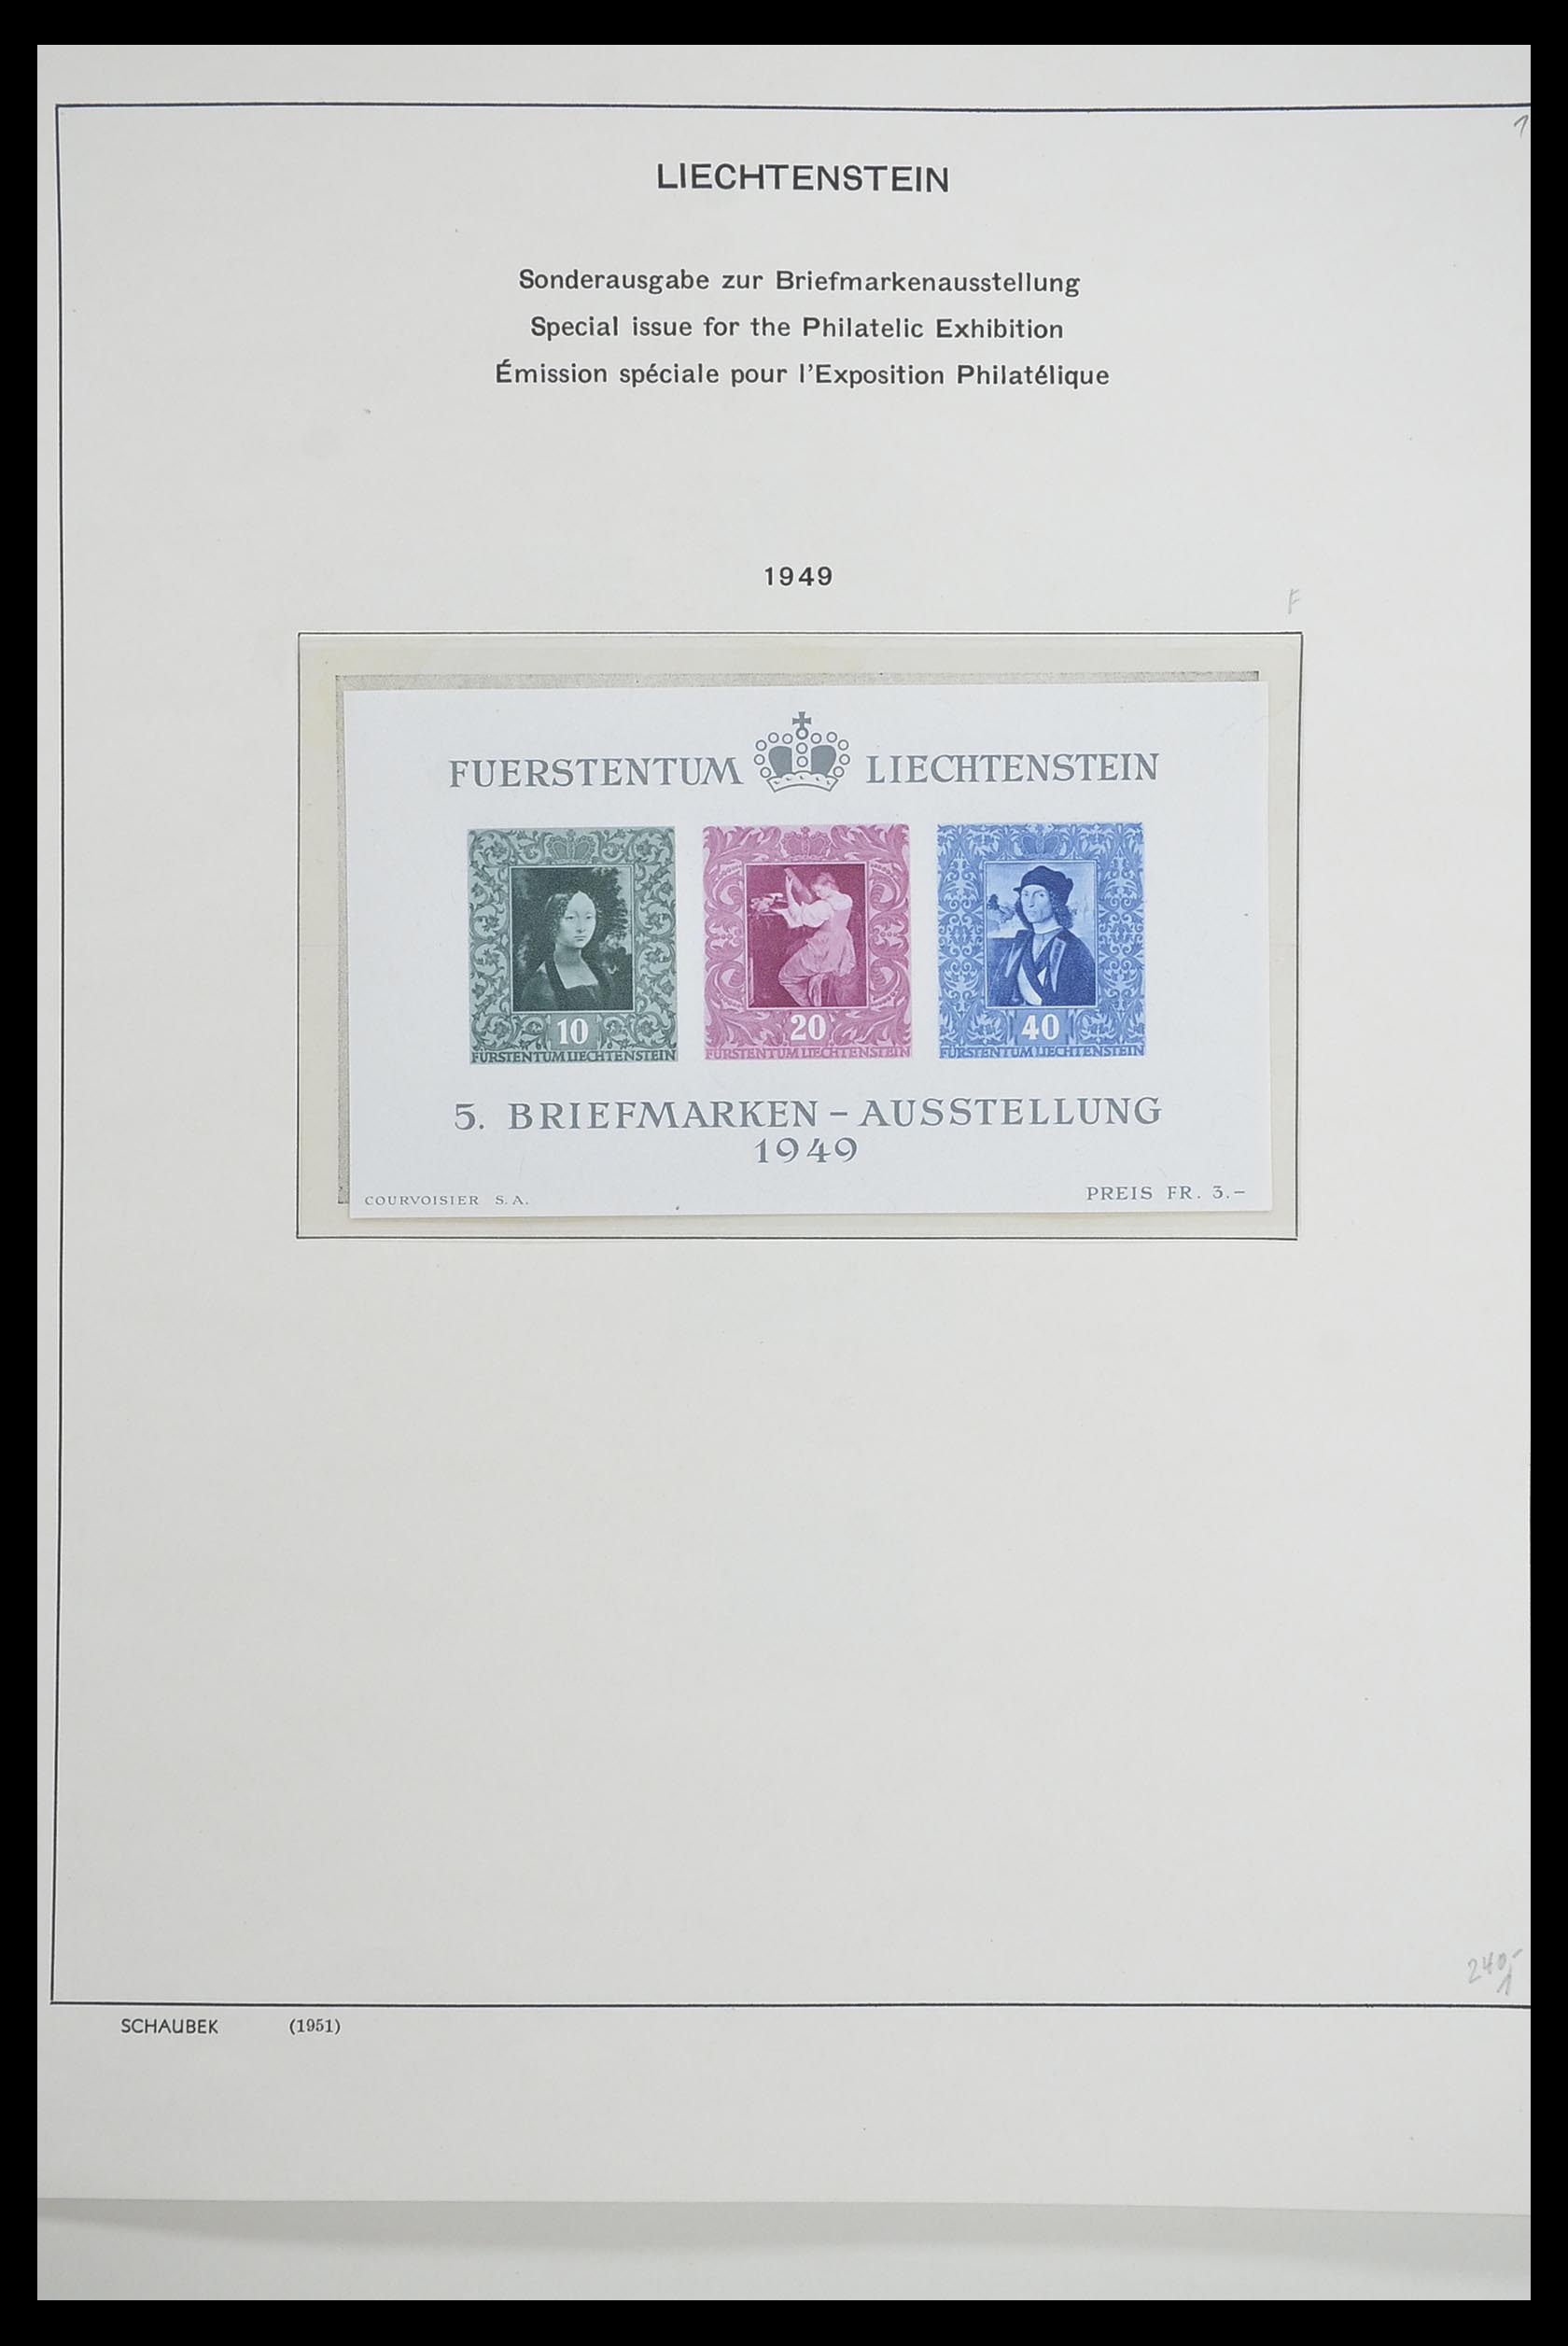 33274 025 - Stamp collection 33274 Liechtenstein 1912-1996.